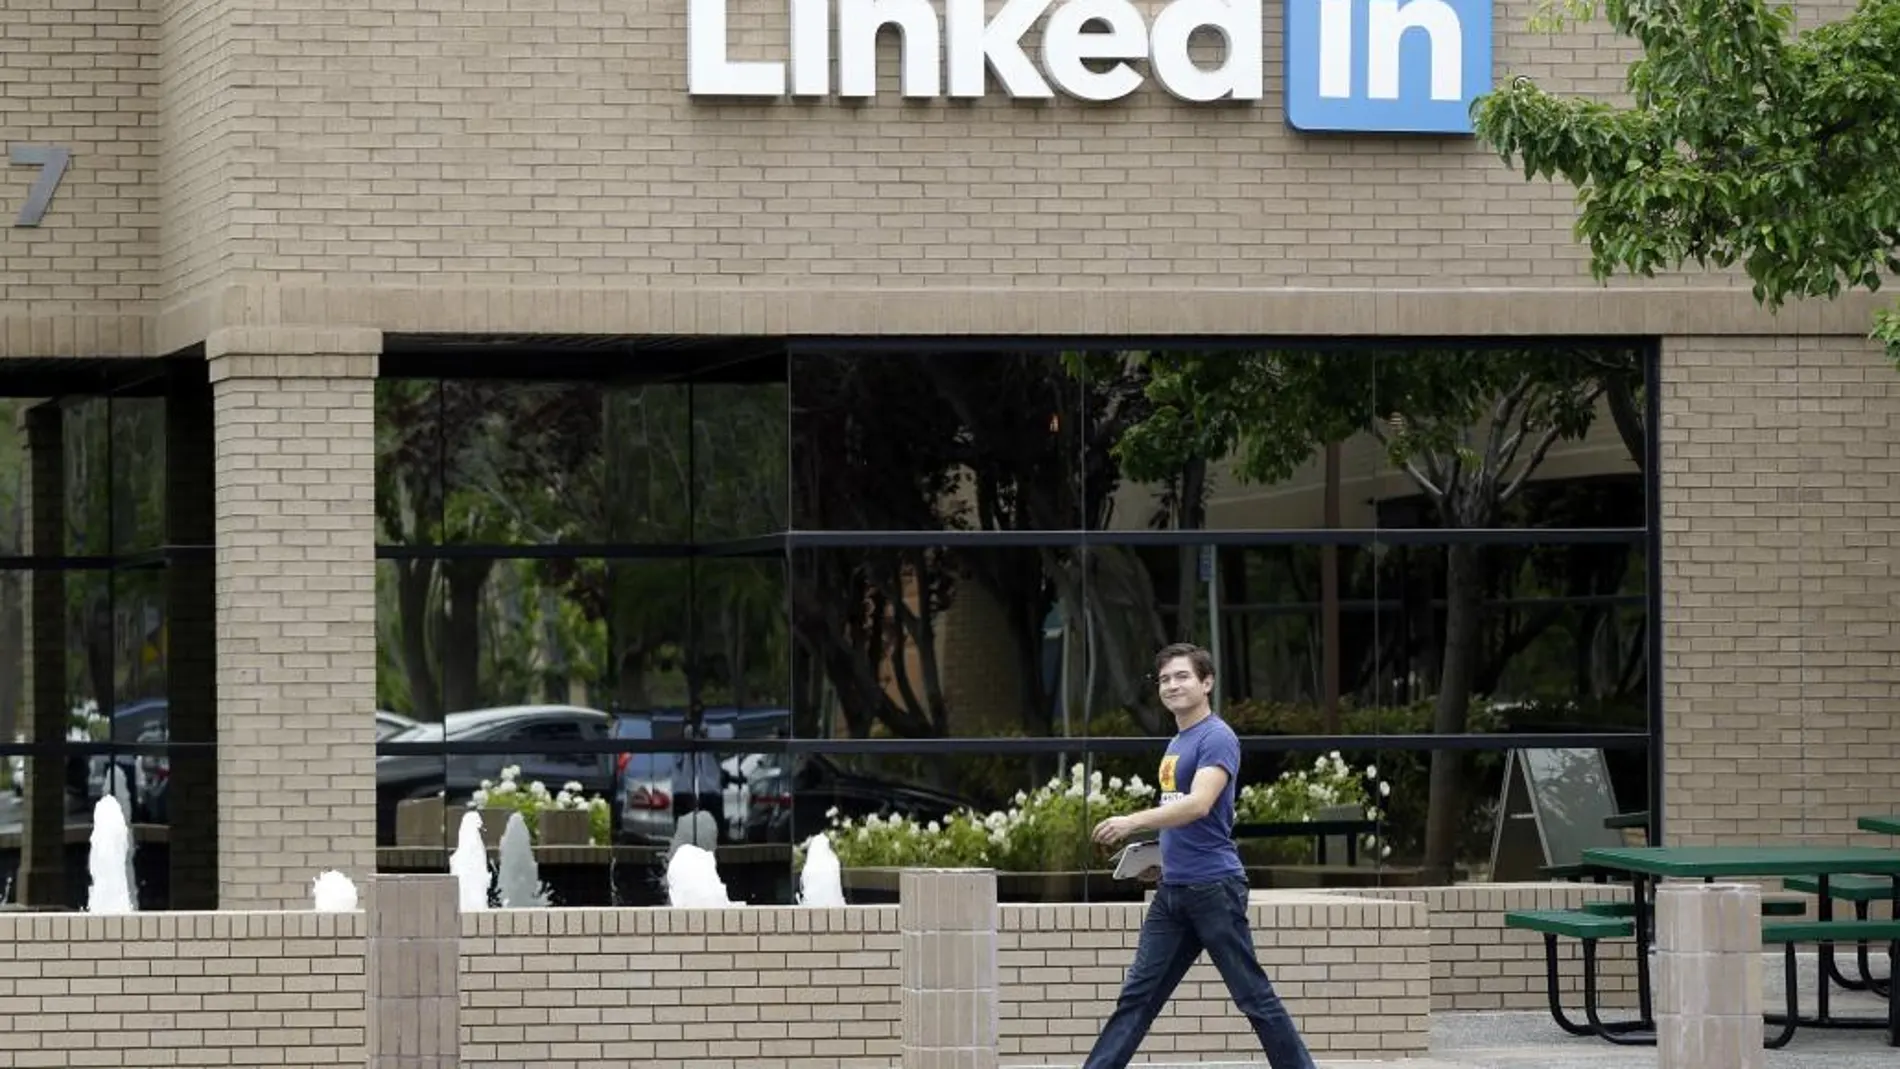 Venden en un foro de hackers los datos de 500 millones de usuarios de LinkedIn